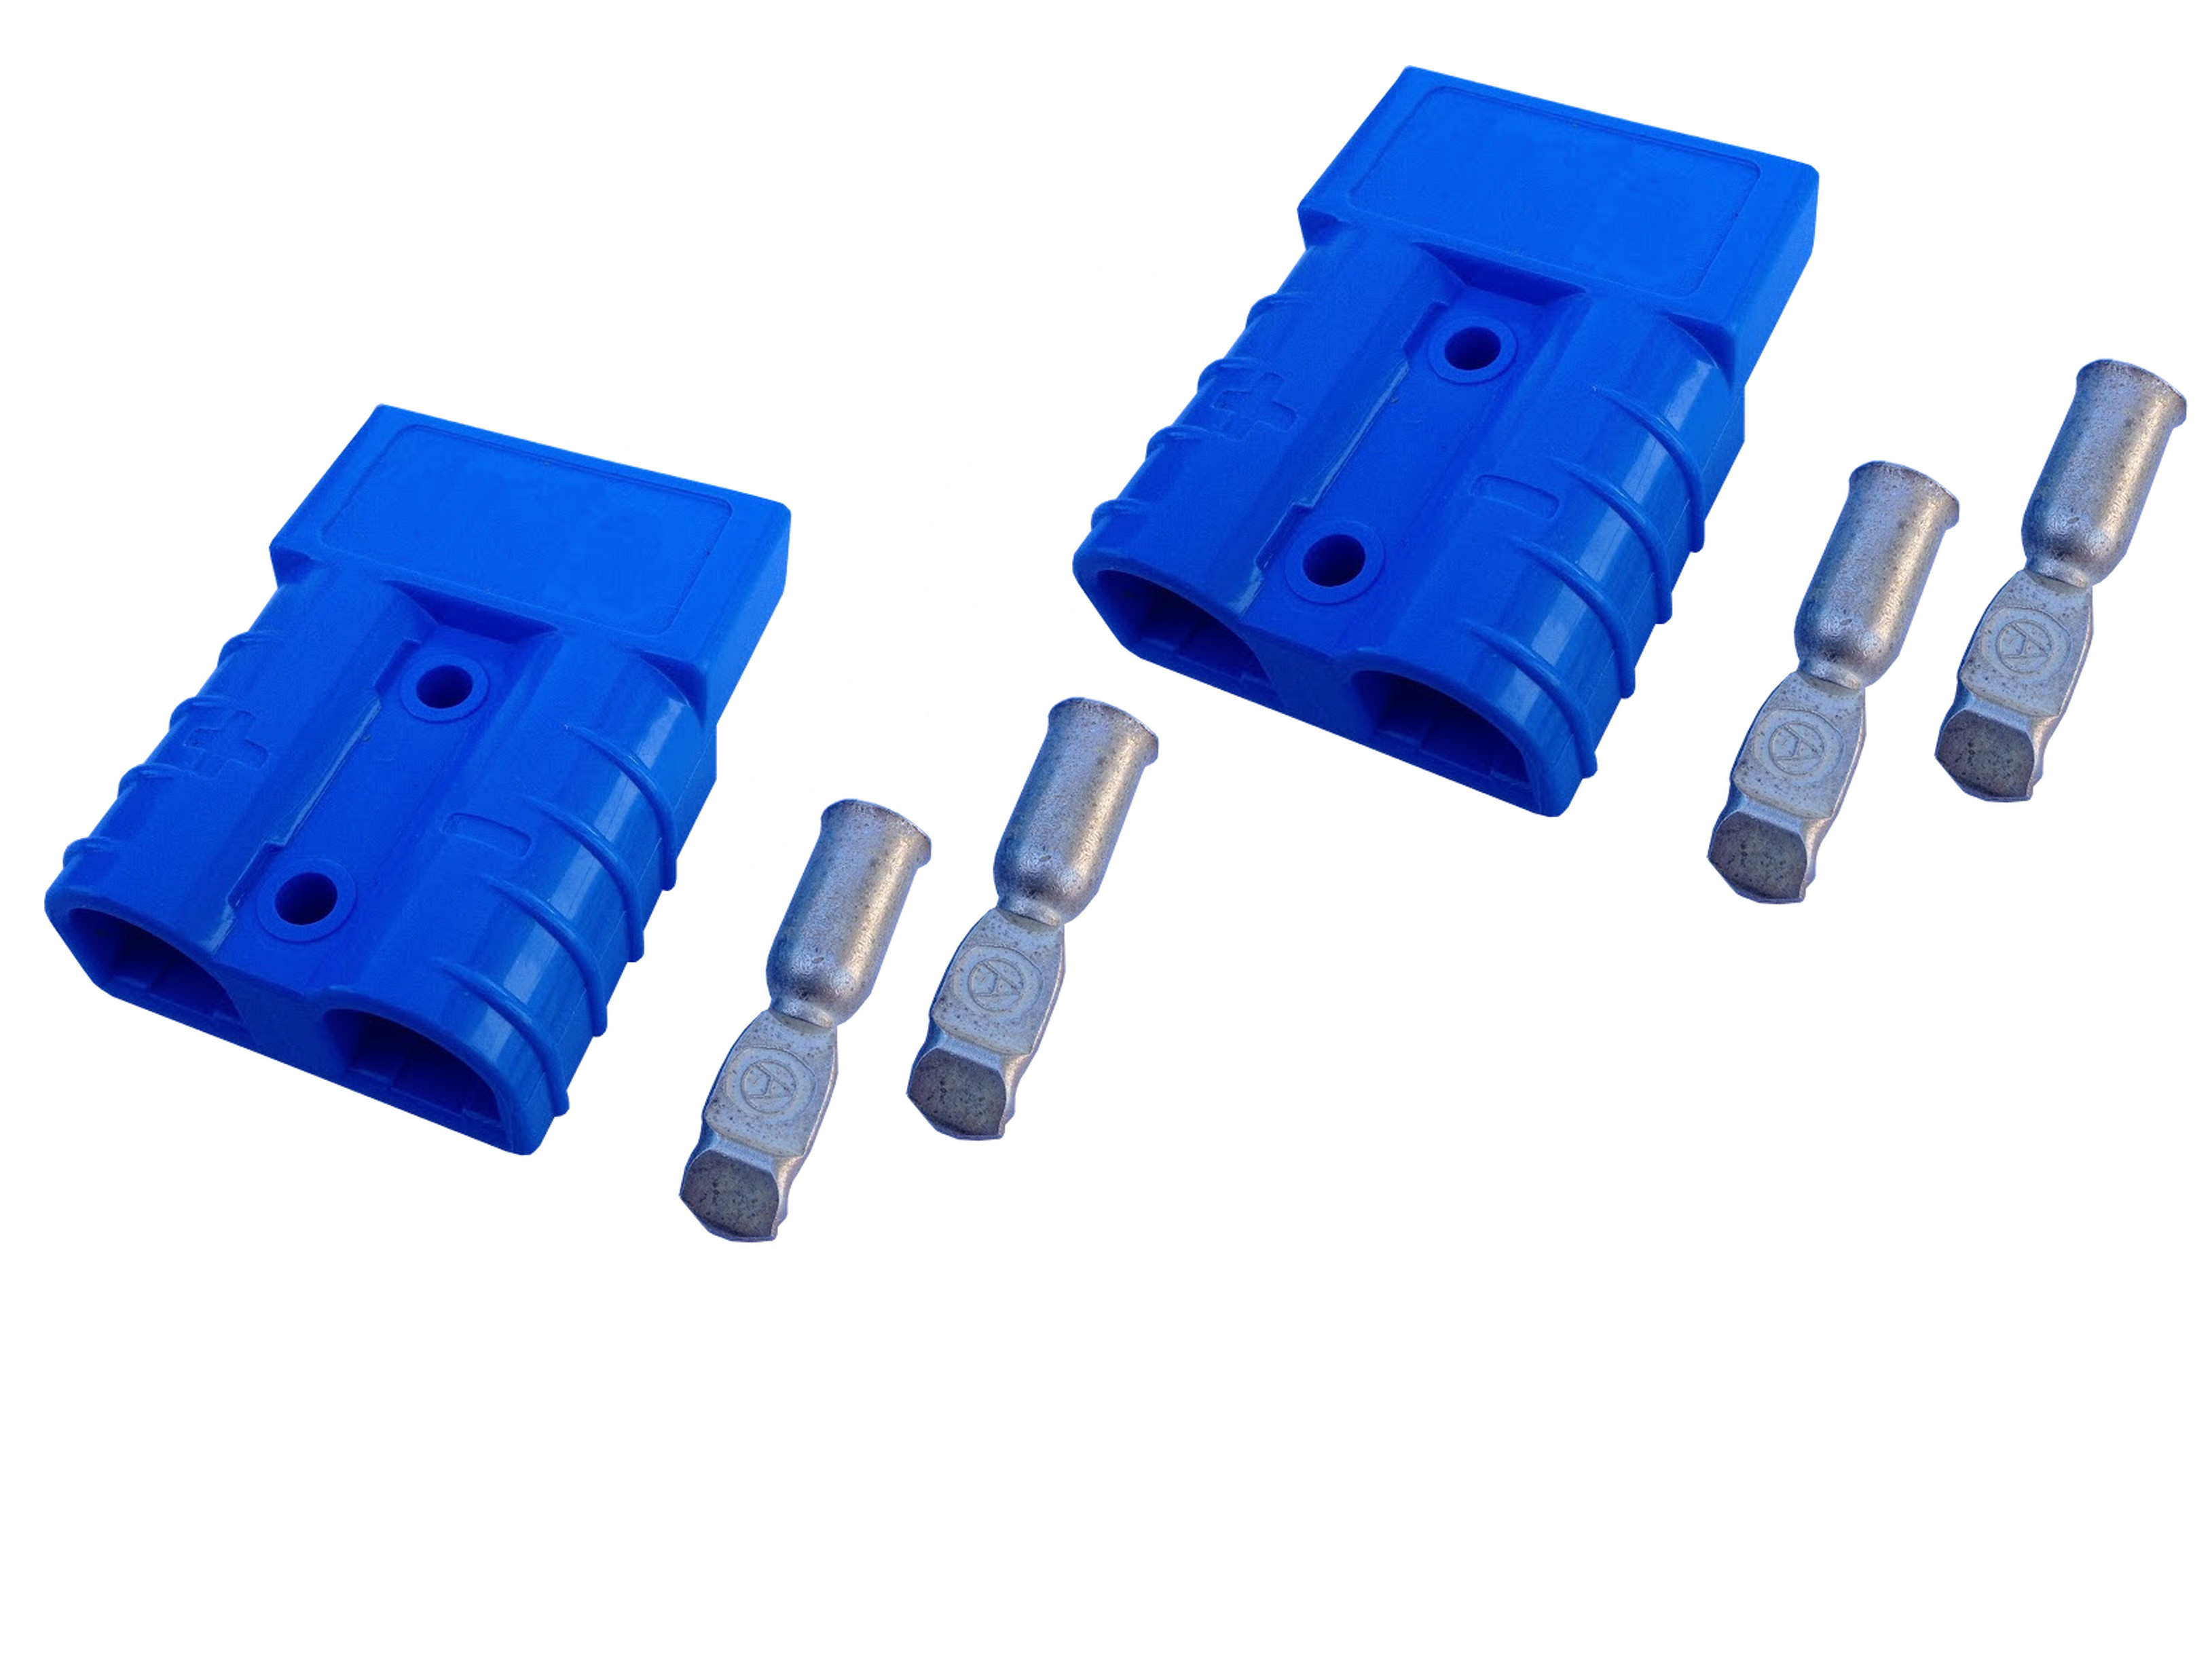 Gabelstapler Stecker Set blau 50A 4-6 mm²